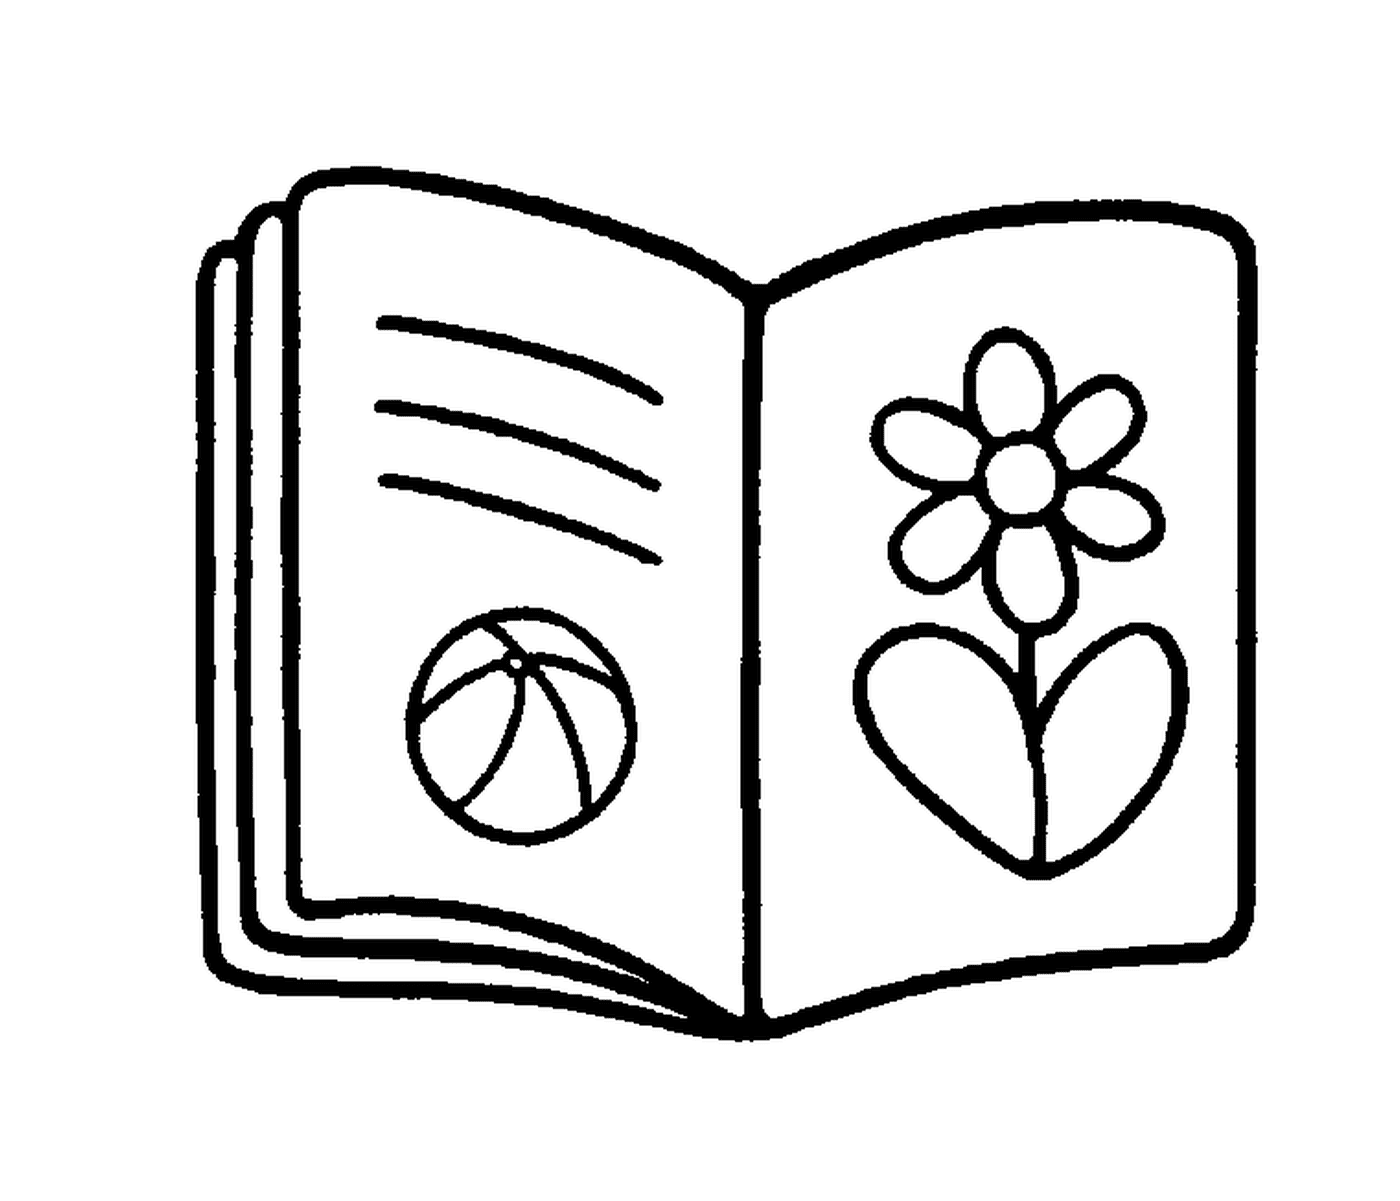  كتاب مفتوح مع الزهرة والبالون 